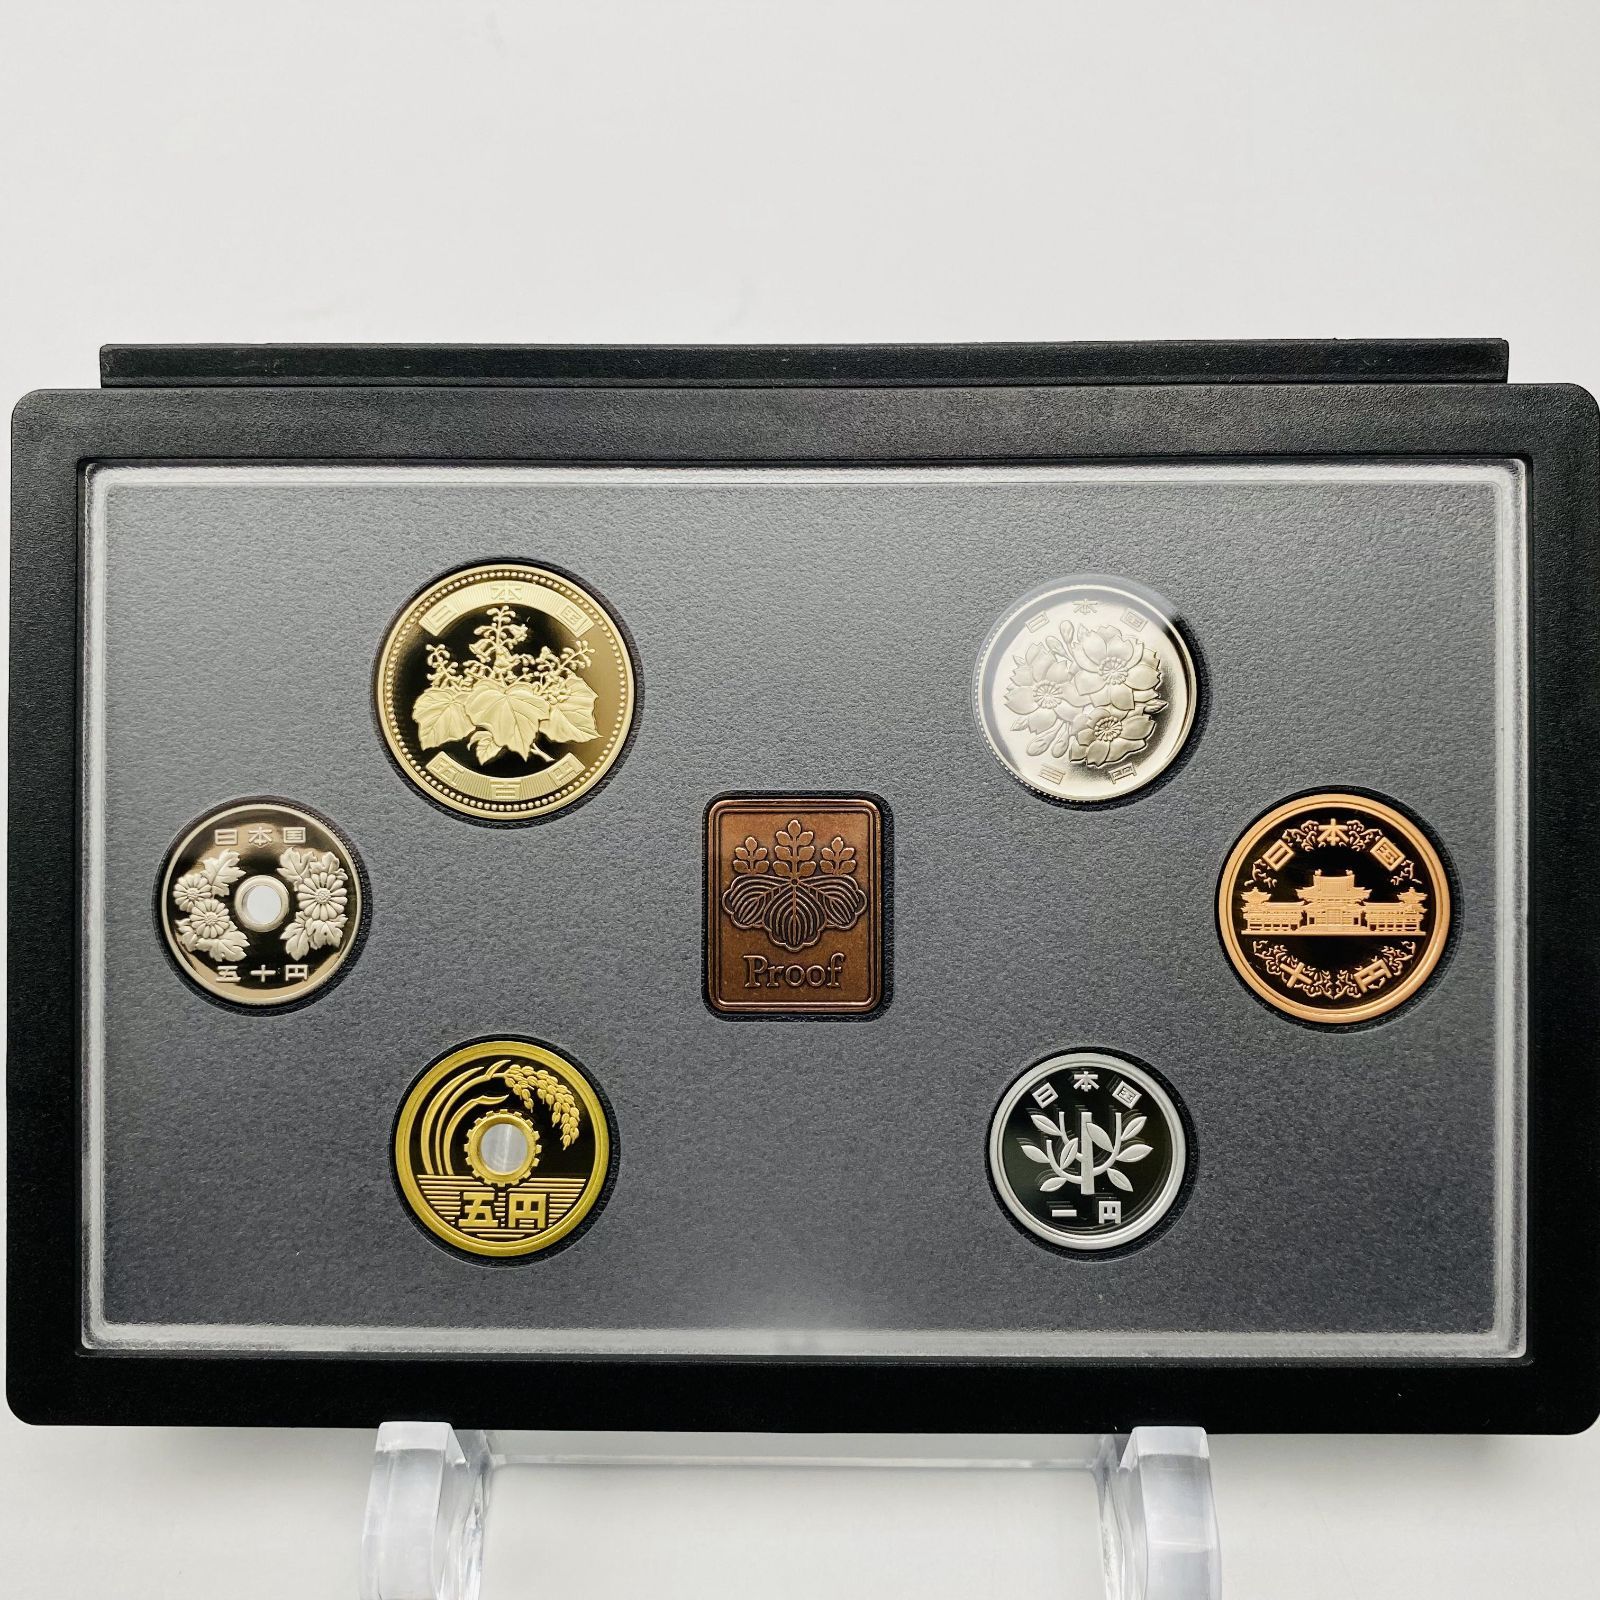 プルーフ貨幣セット 2012年 平成24年 額面666円 年銘板有 全揃い 通常 